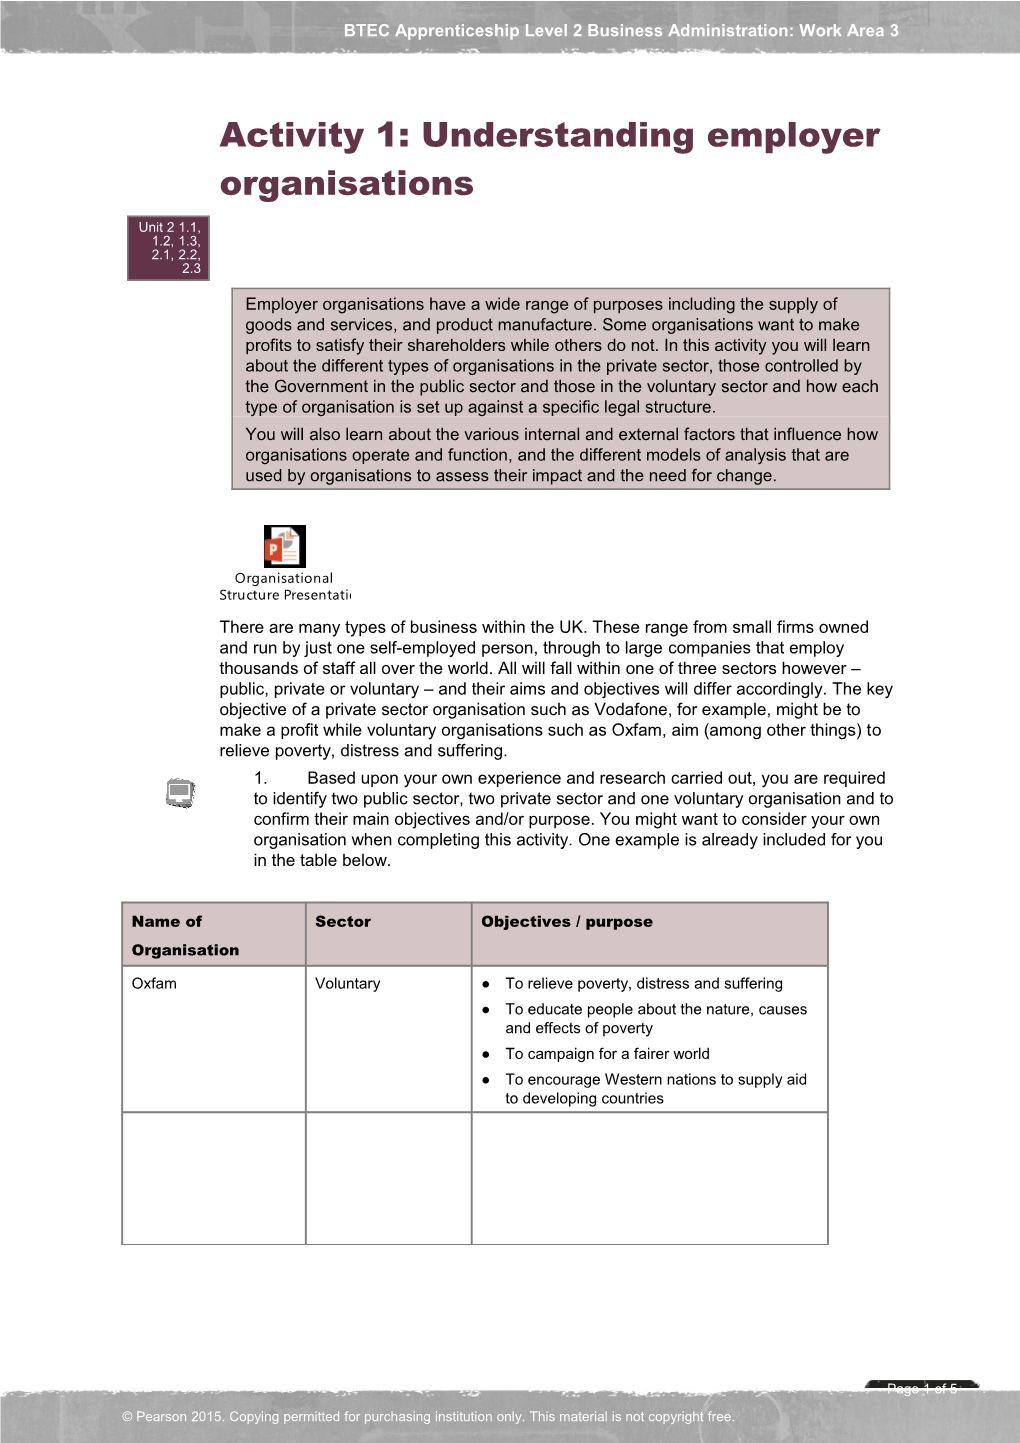 Activity 1: Understanding Employer Organisations